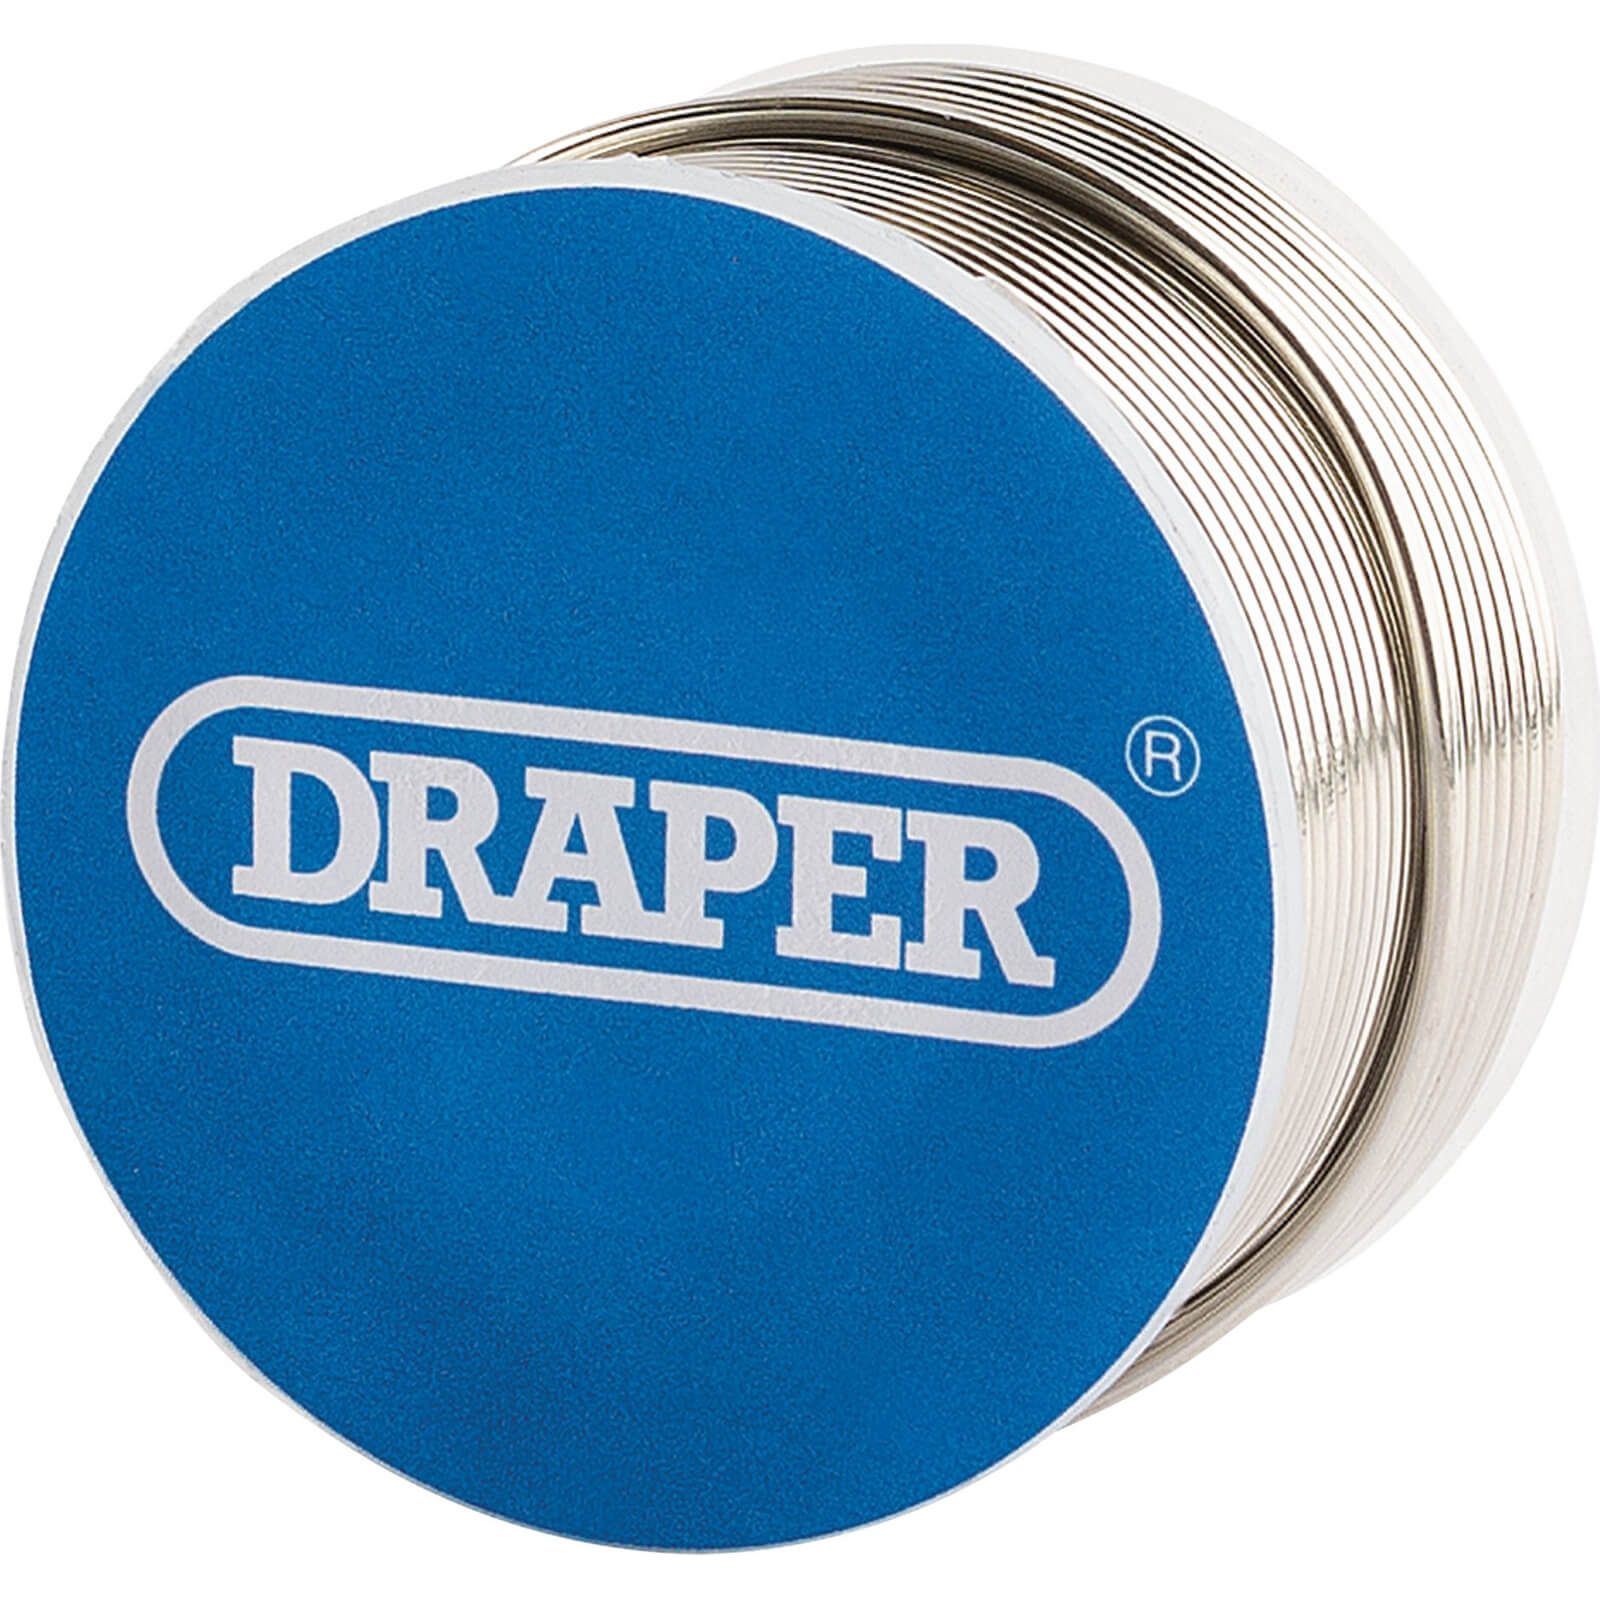 Image of Draper Lead Free Flux Cored Solder Wire Reel 100g